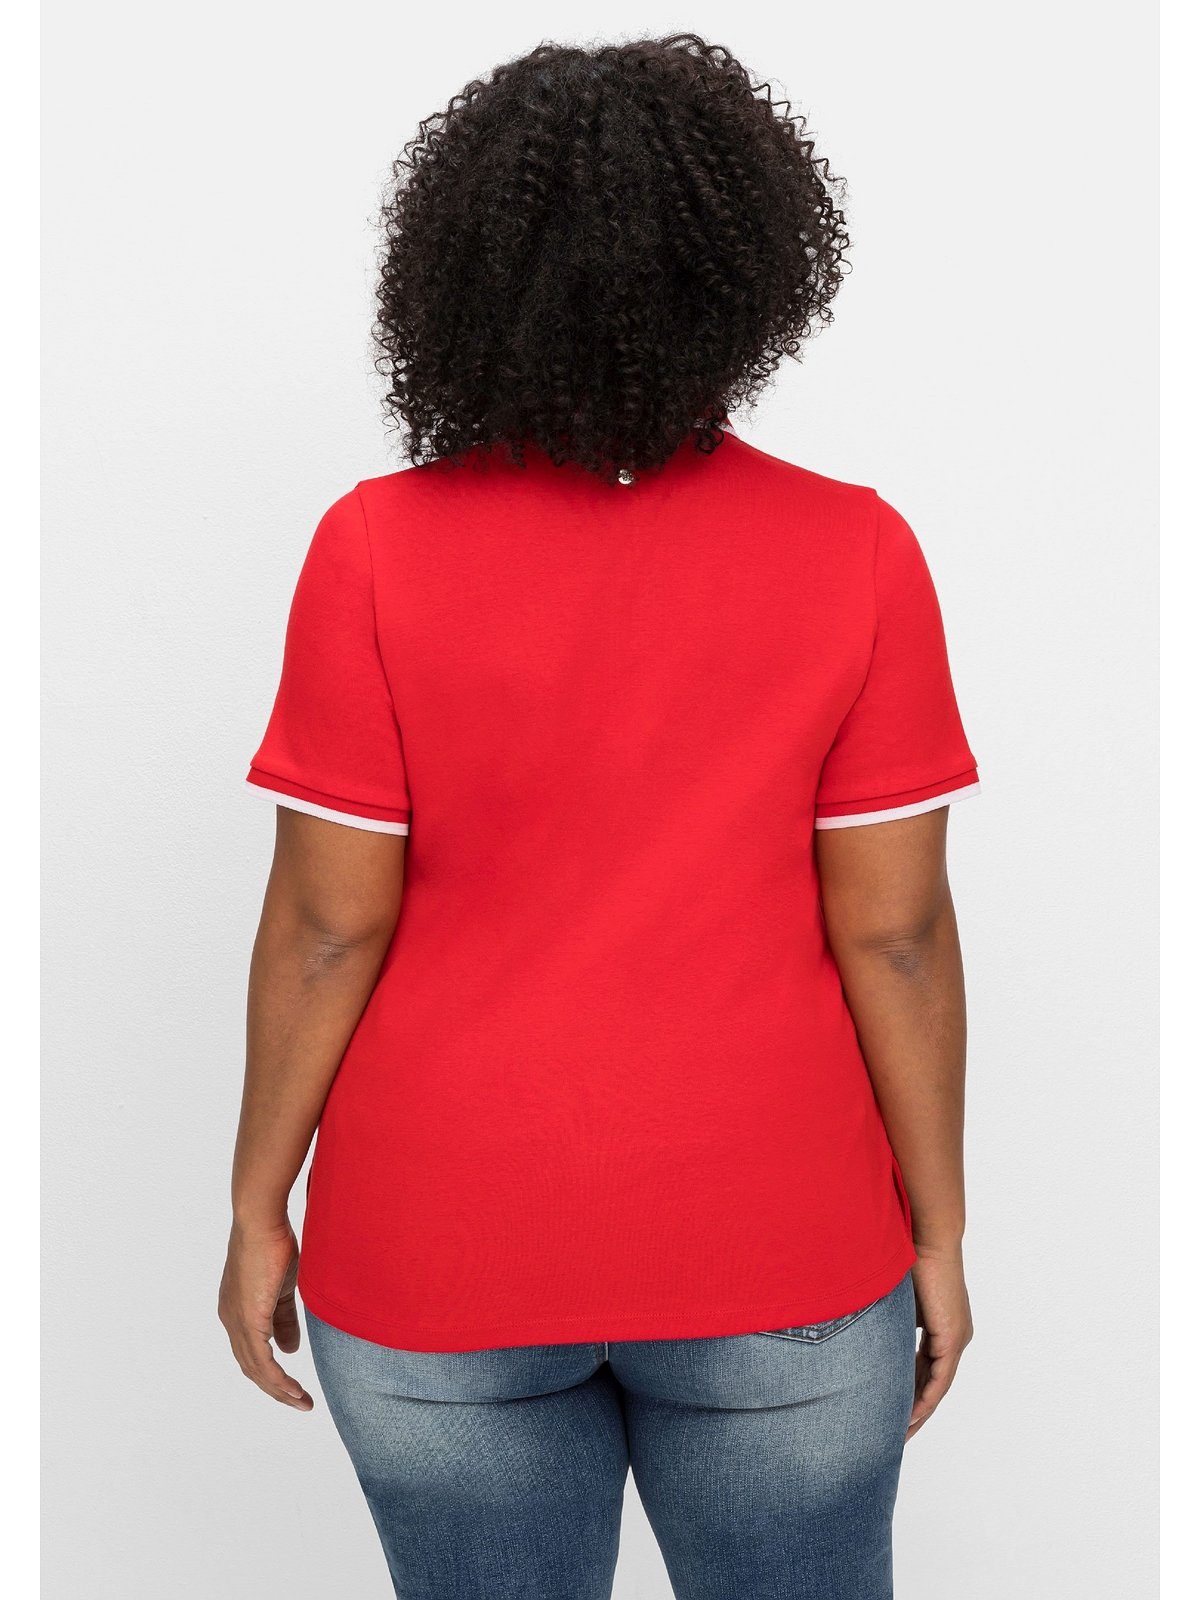 Sheego T-Shirt Größen tailliert Große mit Kontrastkanten, leicht